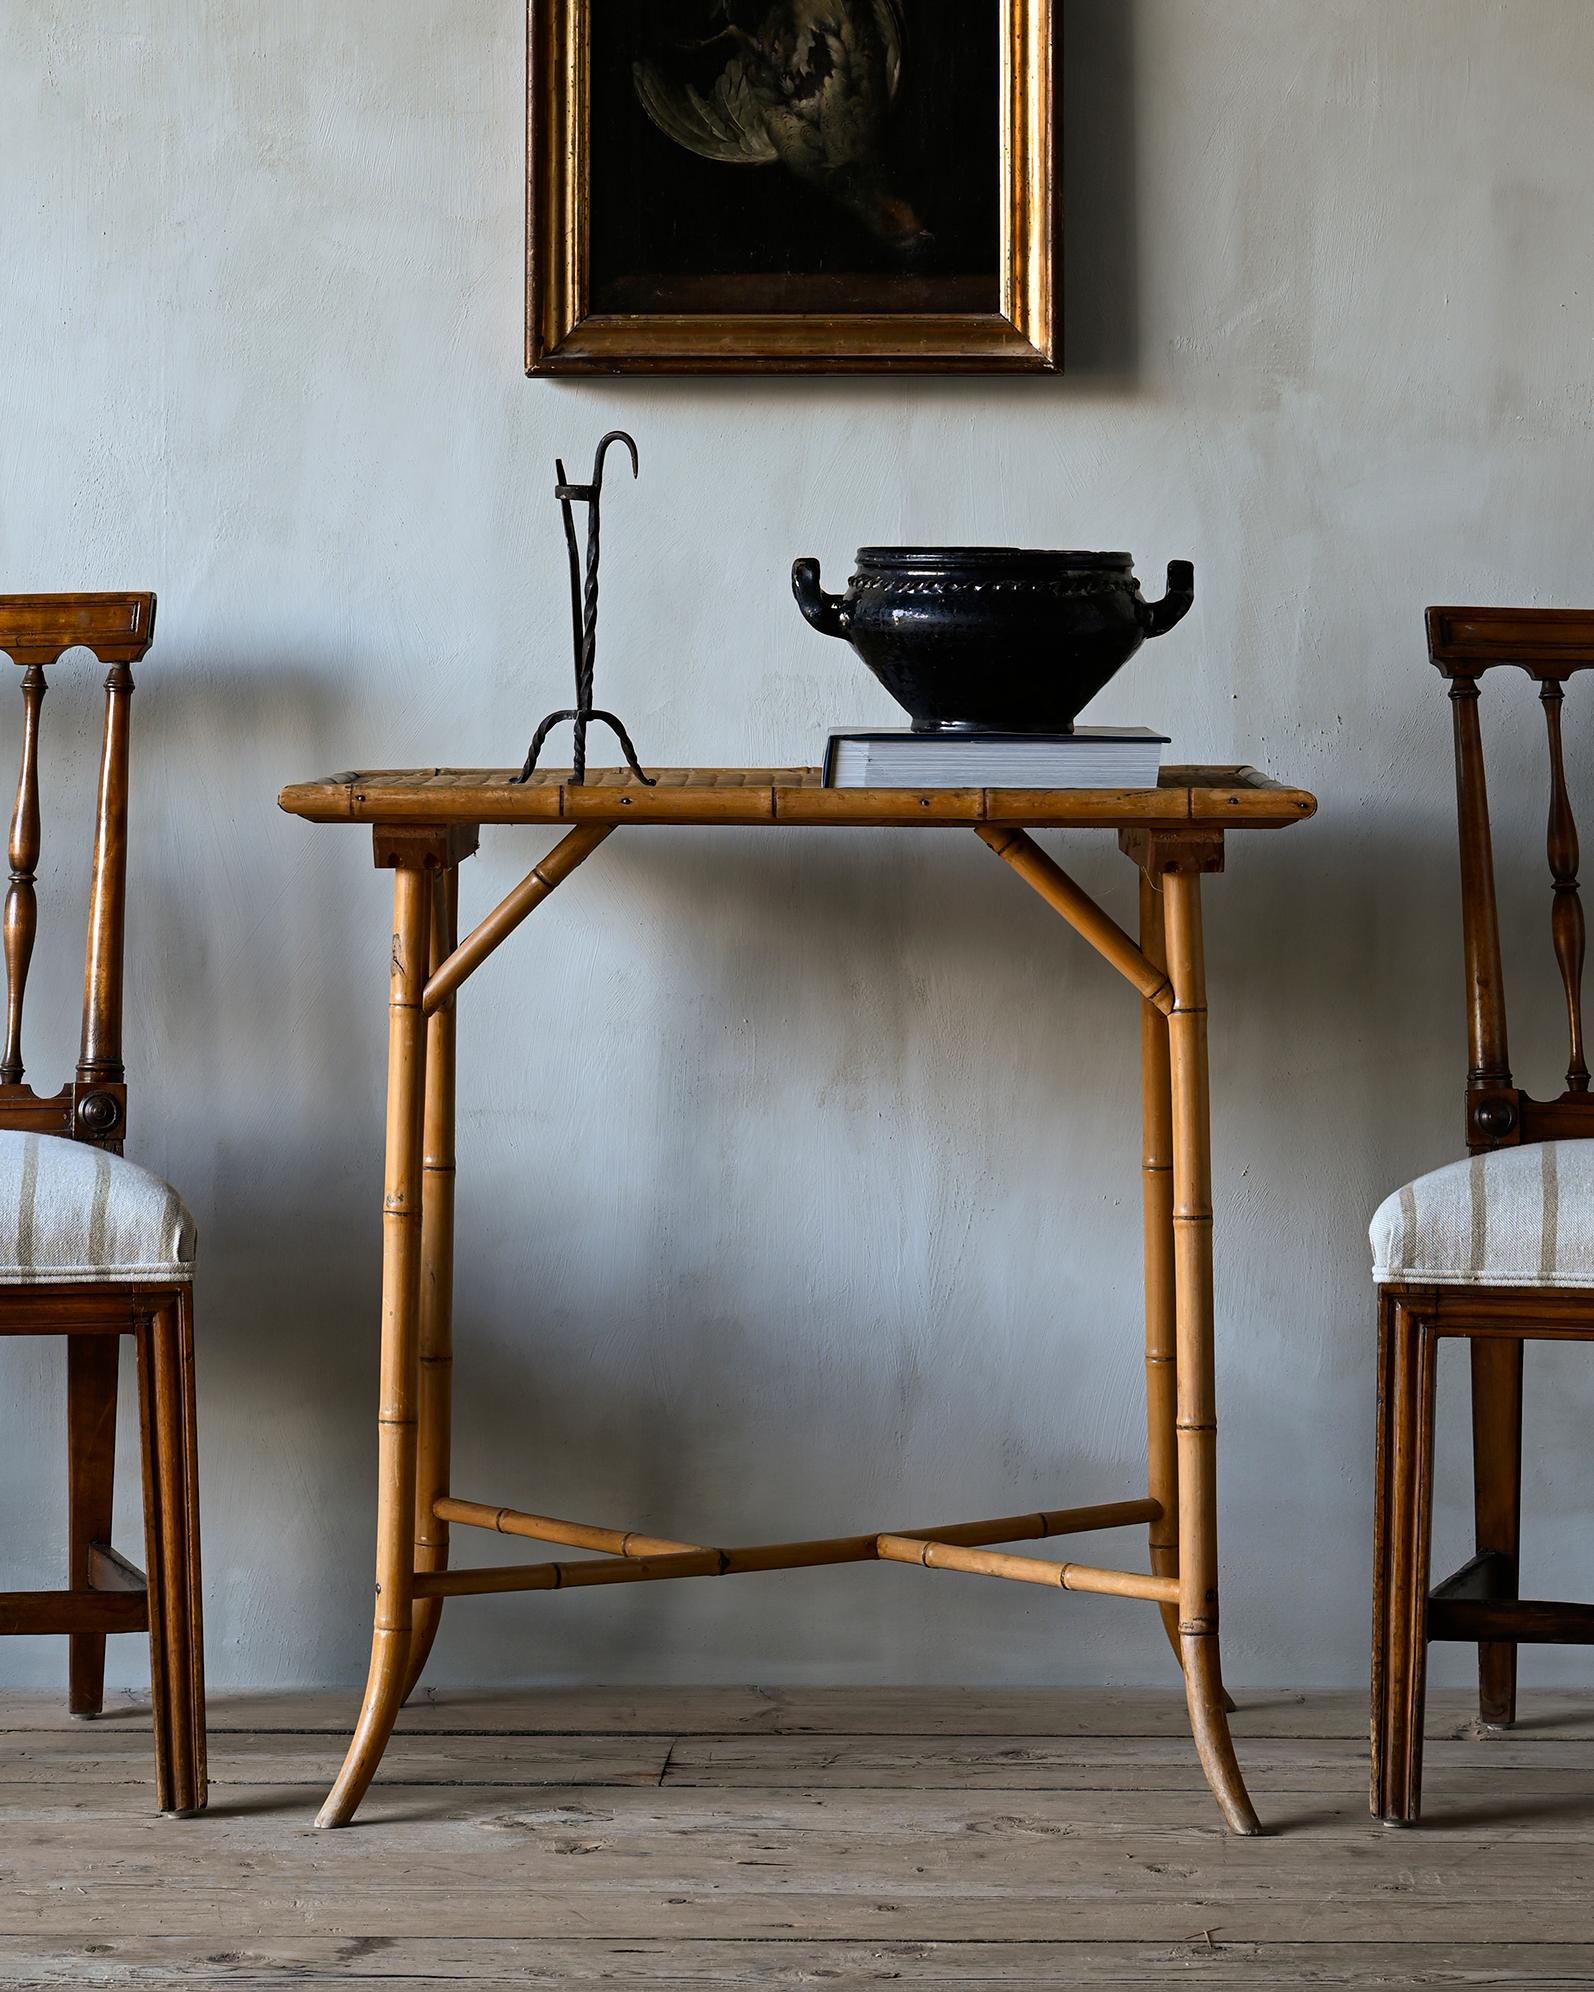 Ungewöhnlicher schwedischer Tisch aus Bambusimitat aus dem 19. Jahrhundert in gutem Zustand und mit einer geflochtenen dünnen Schilfplatte. Um 1890 - 1900, Schweden.